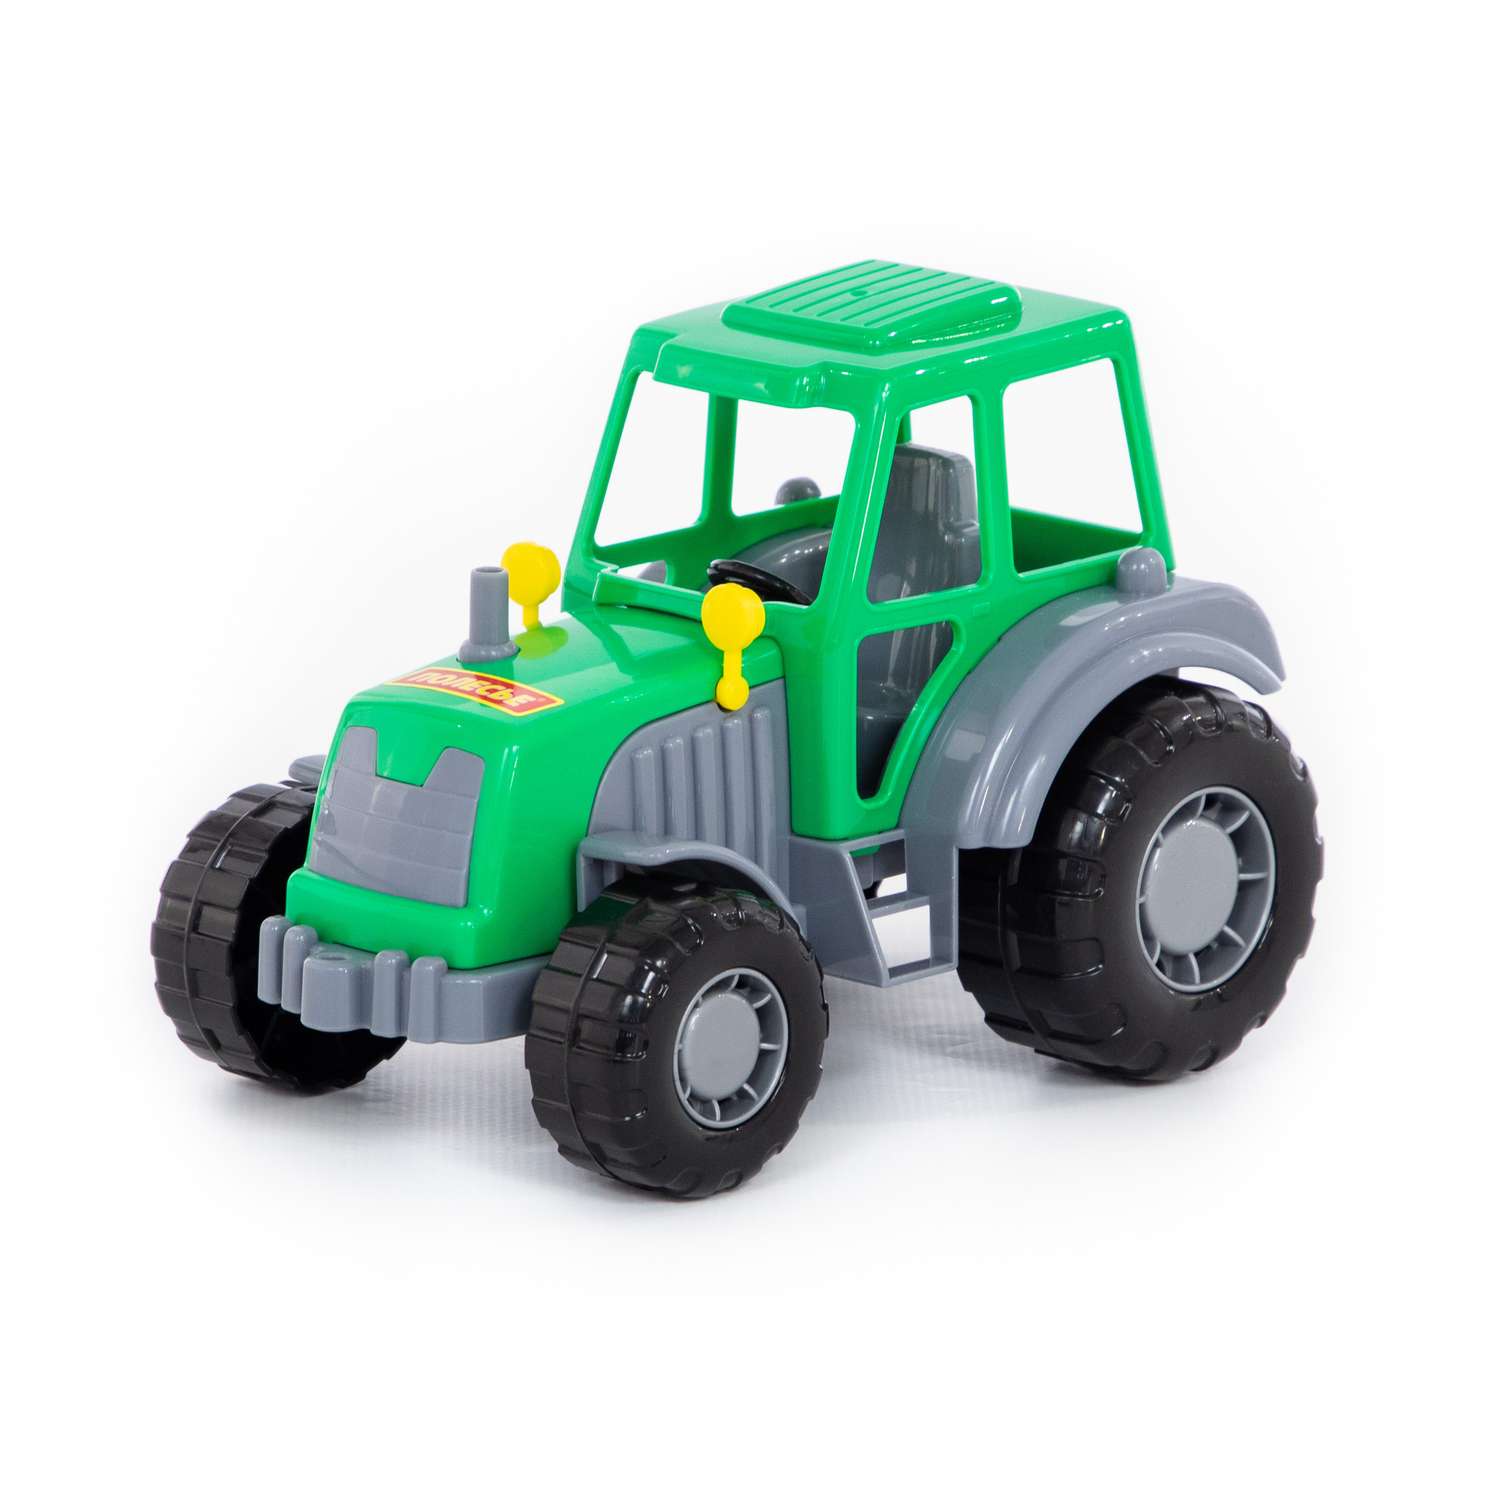 Трактор Полесье Мастер зеленый с серым 35240/2 - фото 1